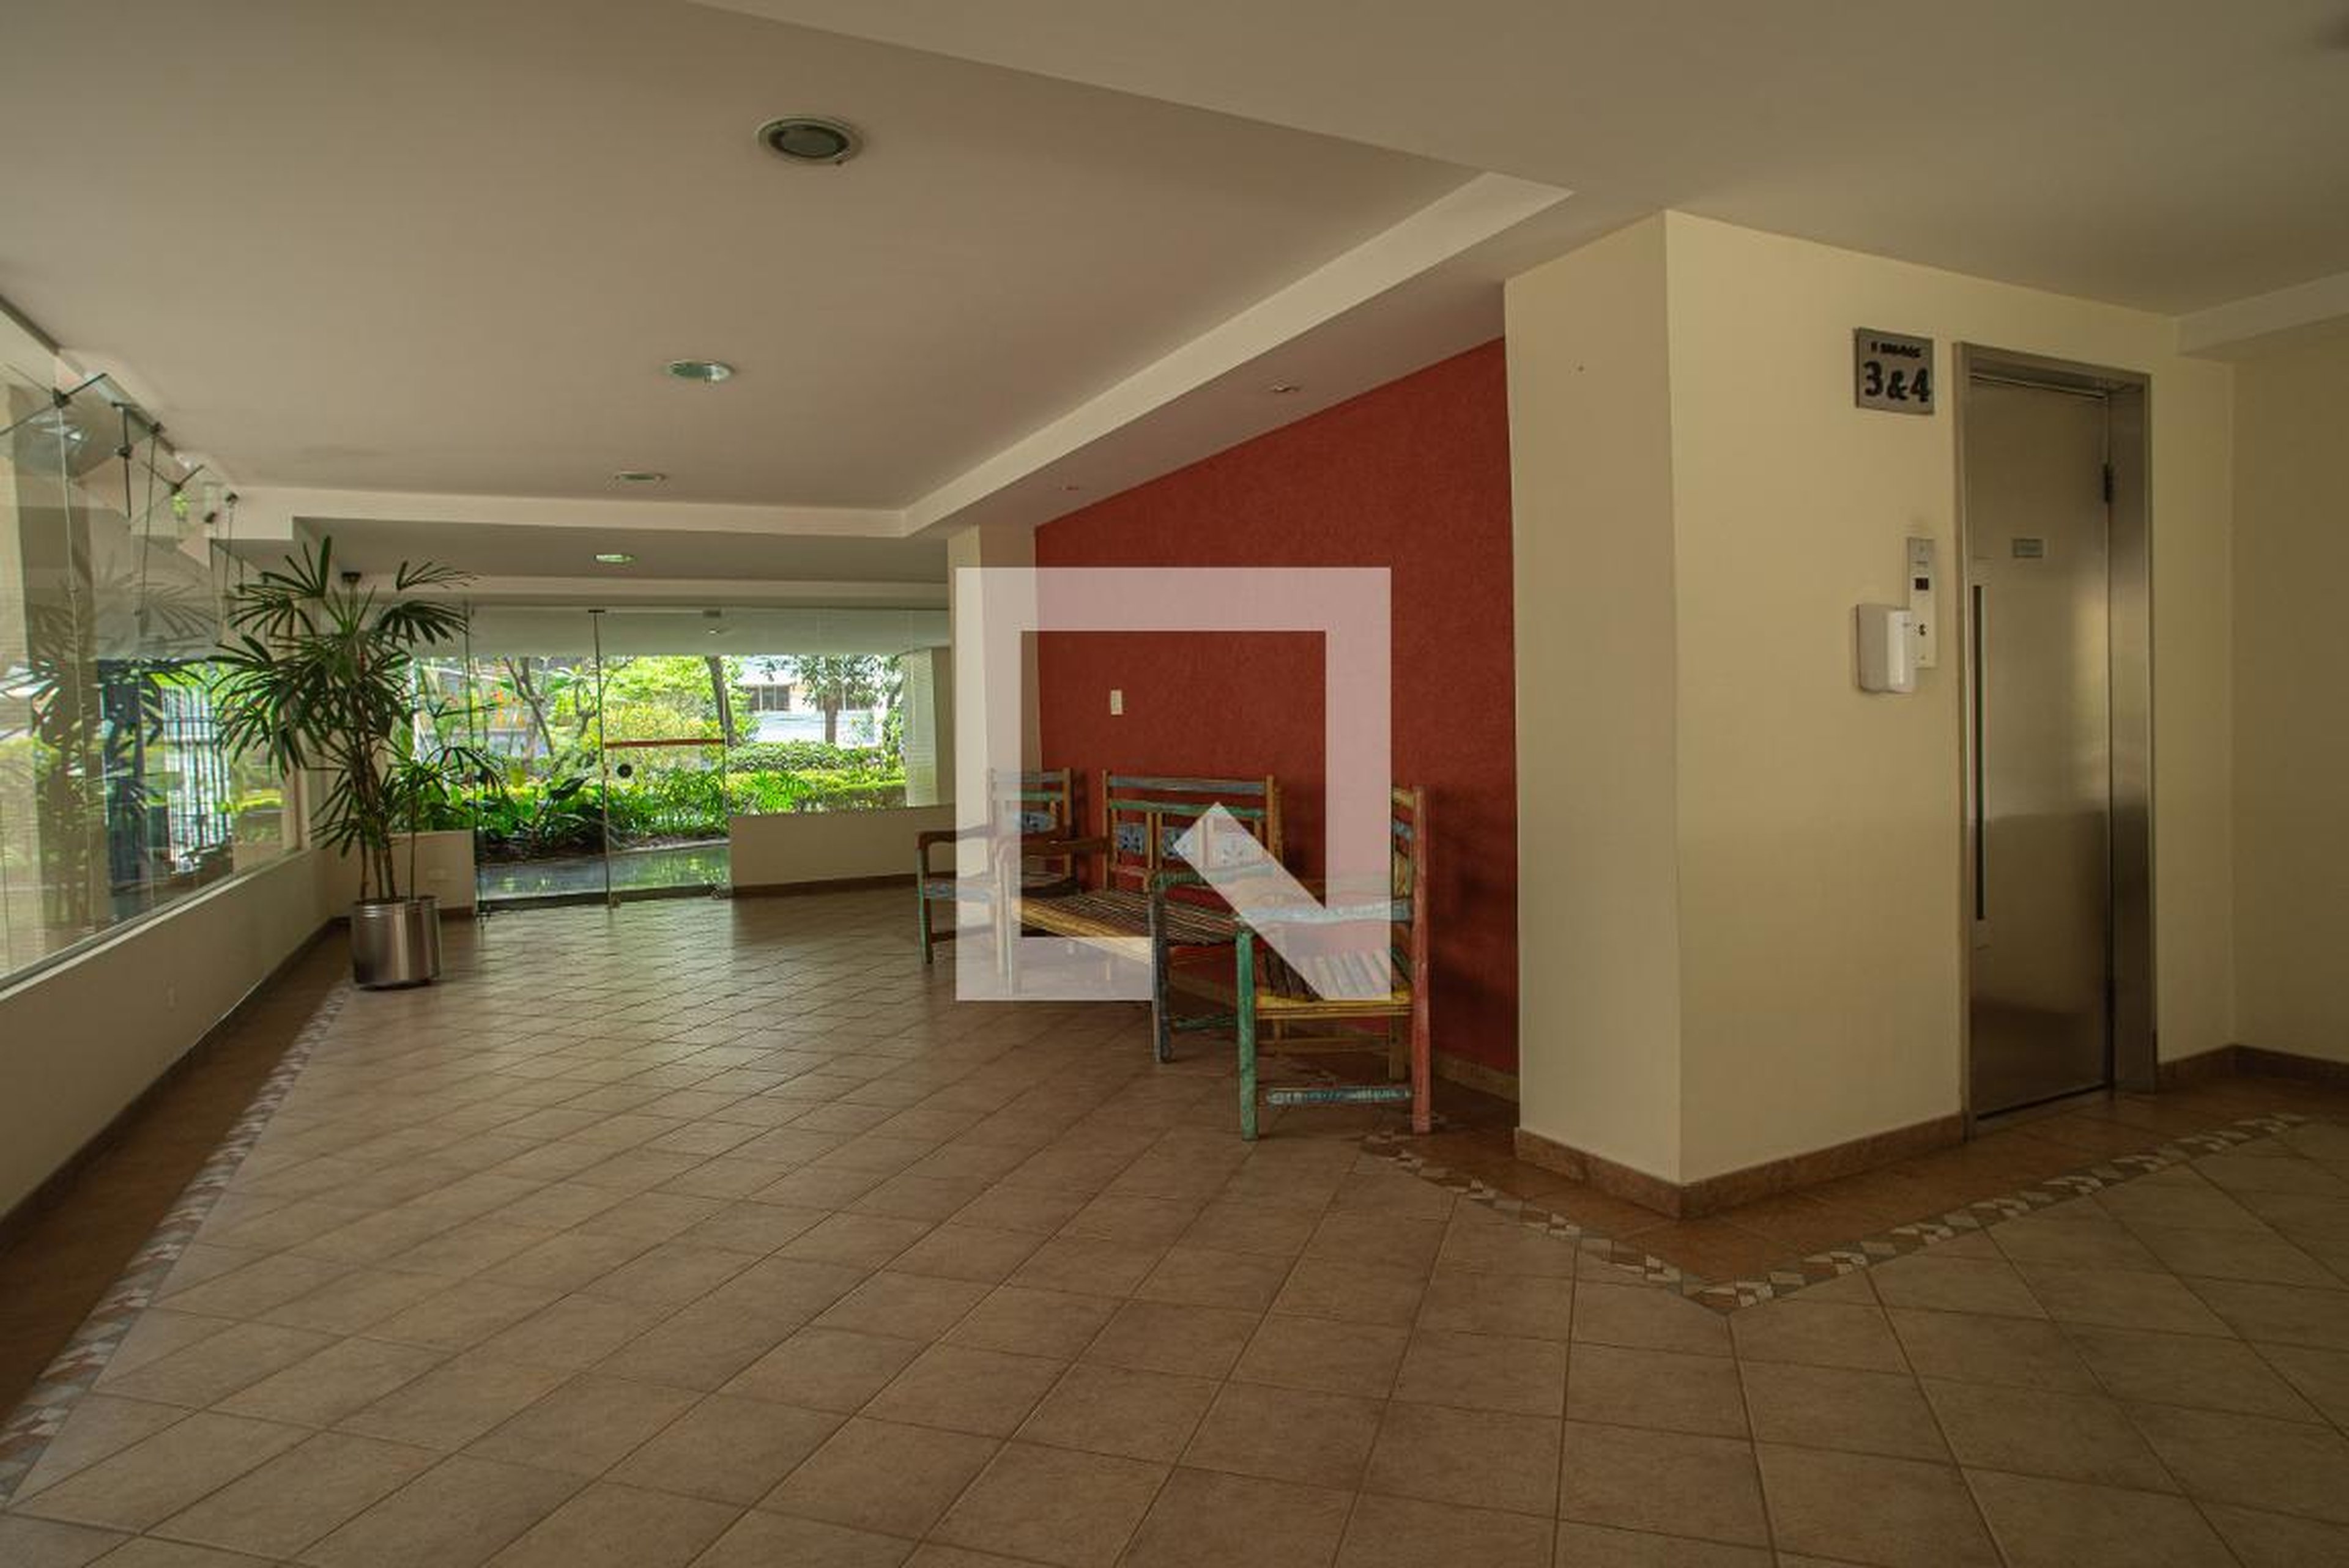 Hall social - São Roberto